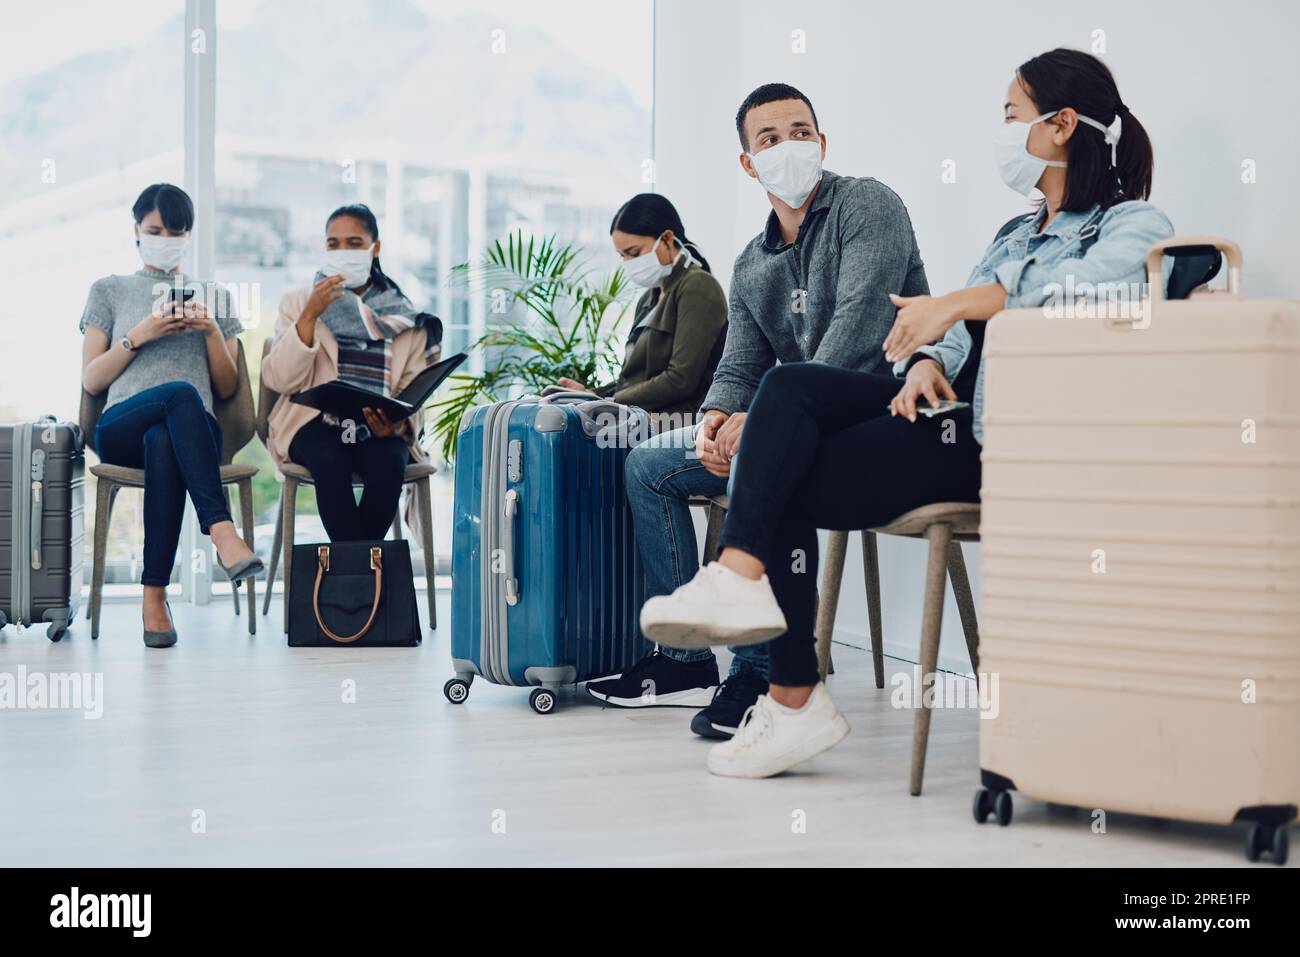 Gruppo di persone che viaggiano durante il covid in attesa in fila presso una lounge dell'aeroporto con maschere protettive. Turisti seduti in coda in una struttura di trasporto pubblico durante la pandemia di coronavirus Foto Stock